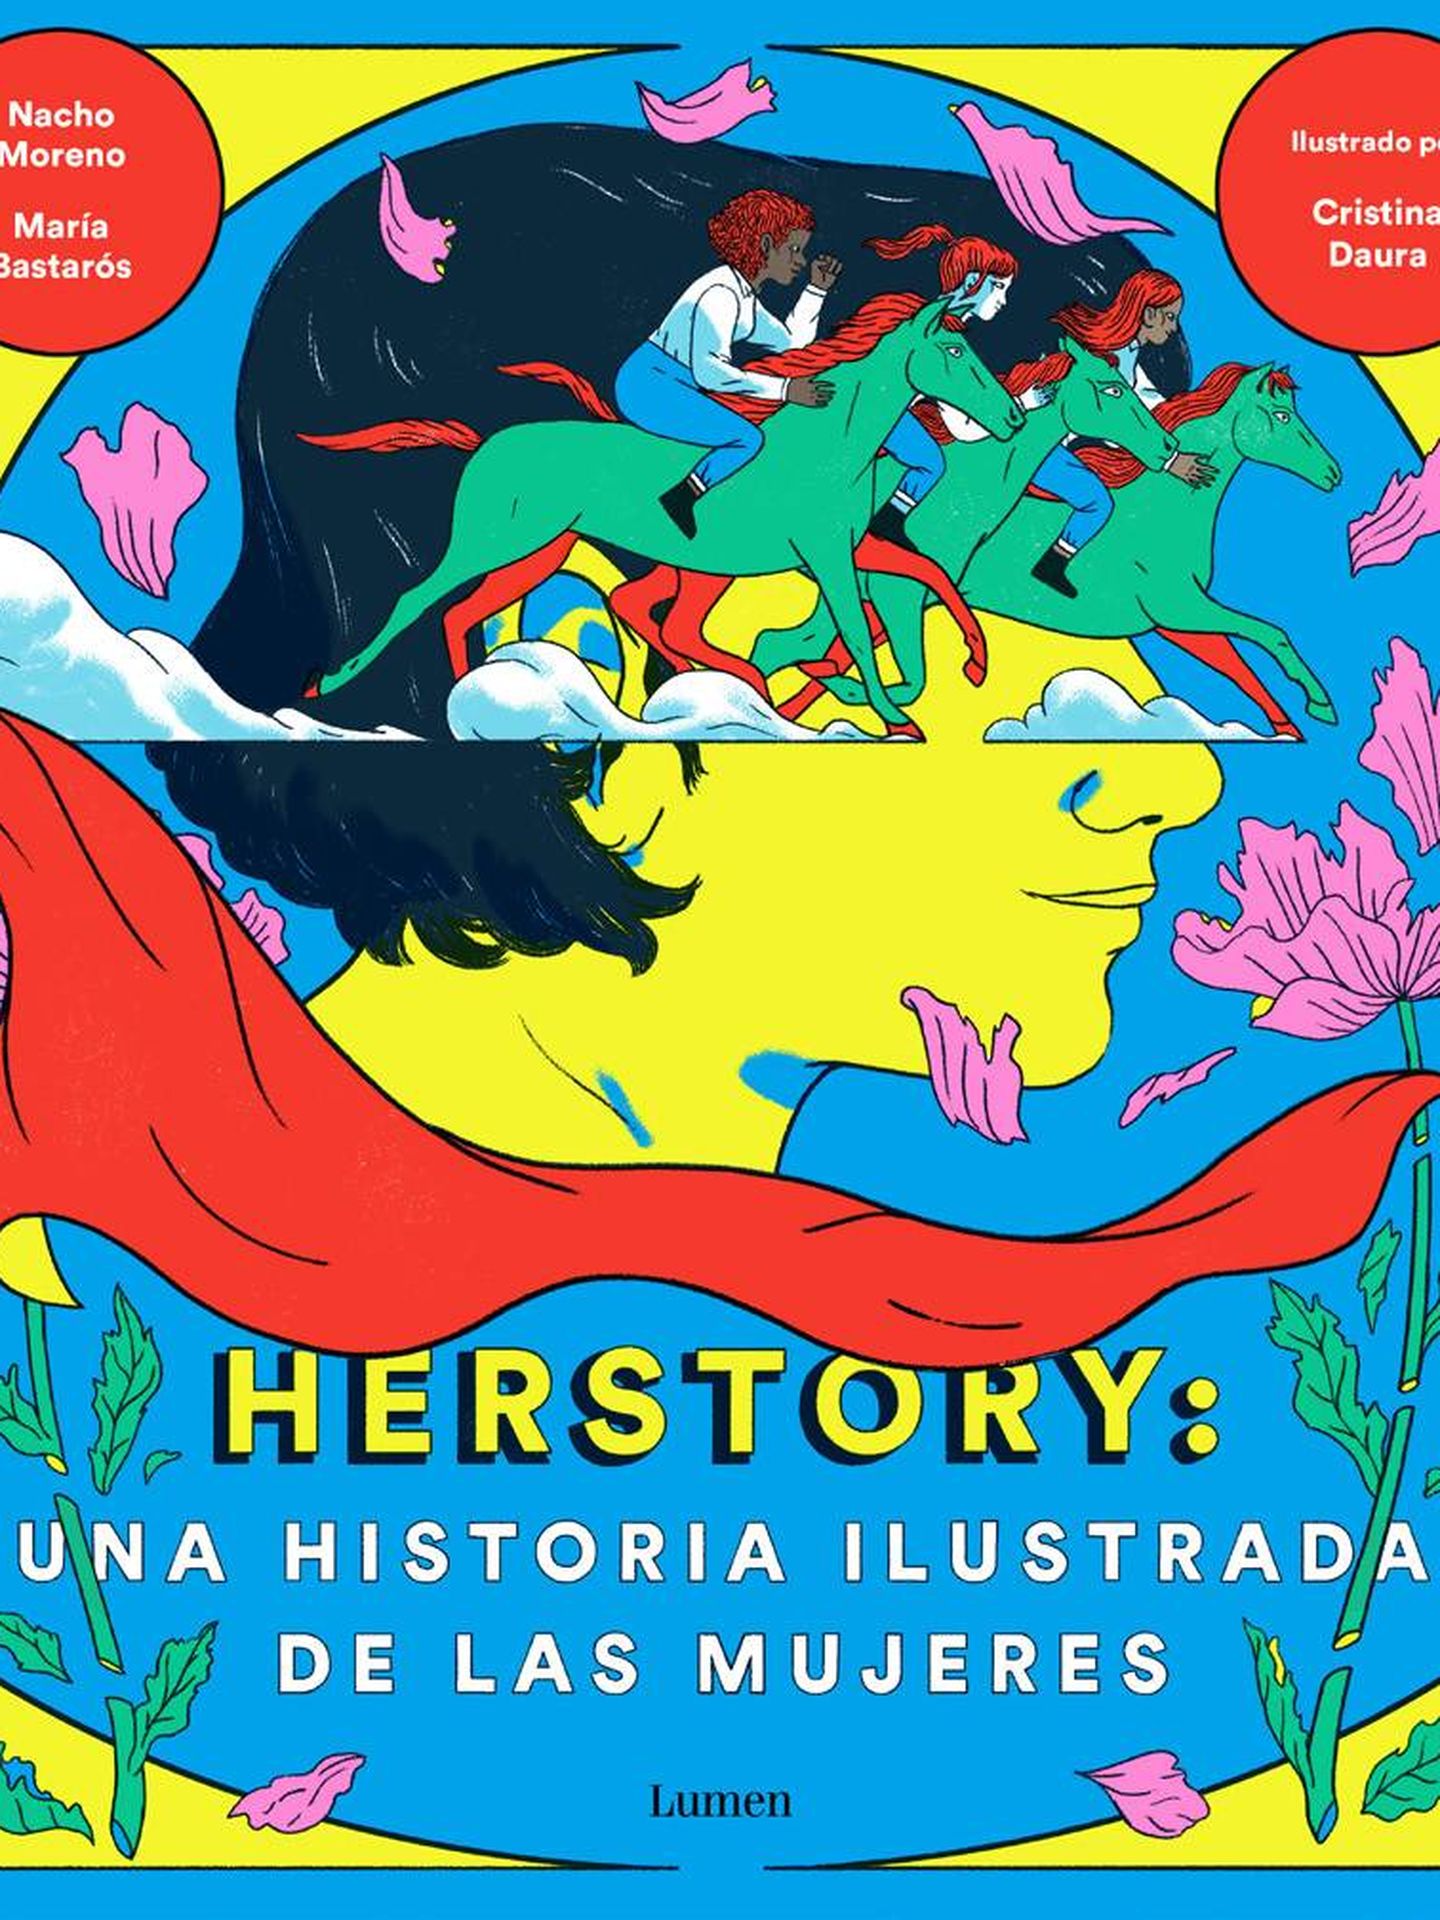 'Herstory: una historia ilustrada de las mujeres' (Lumen)